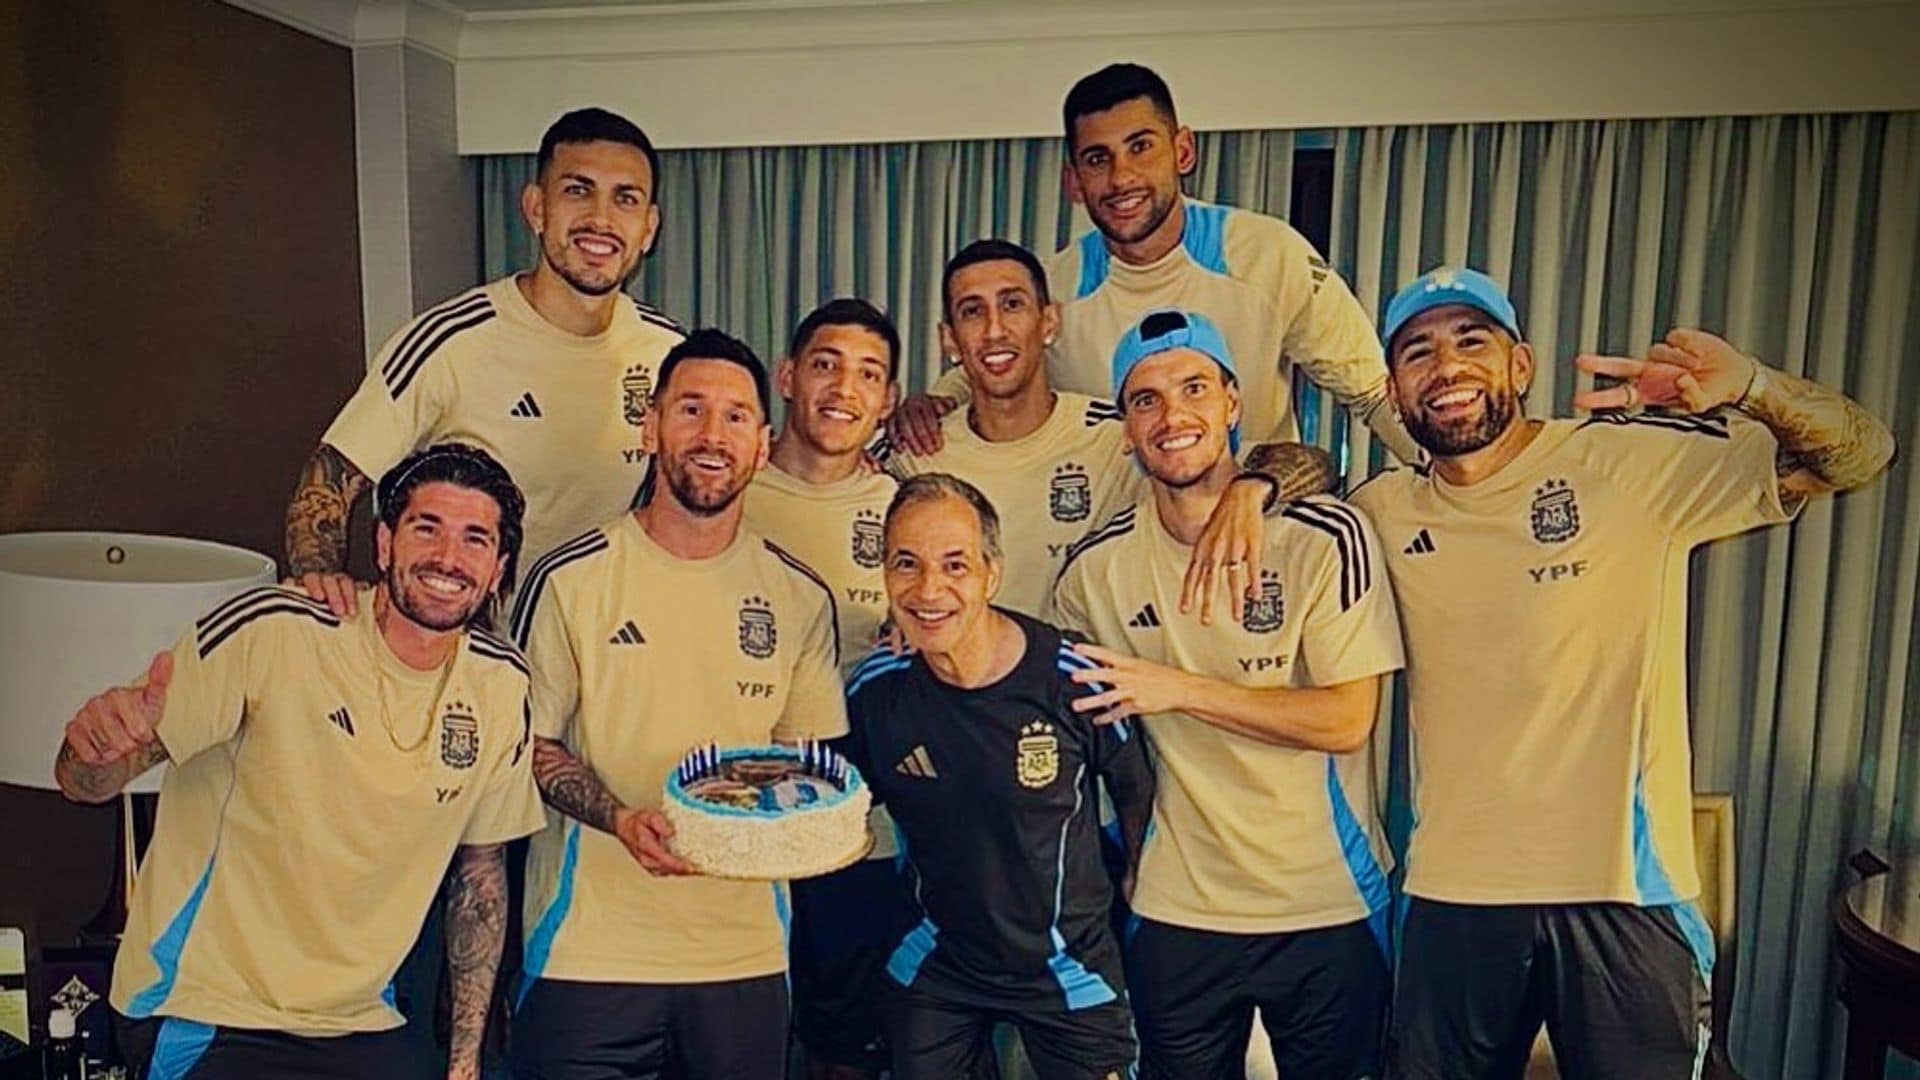 Con varios pasteles y bocadillos, Lionel Messi celebra su cumpleaños junto a la Selección Argentina